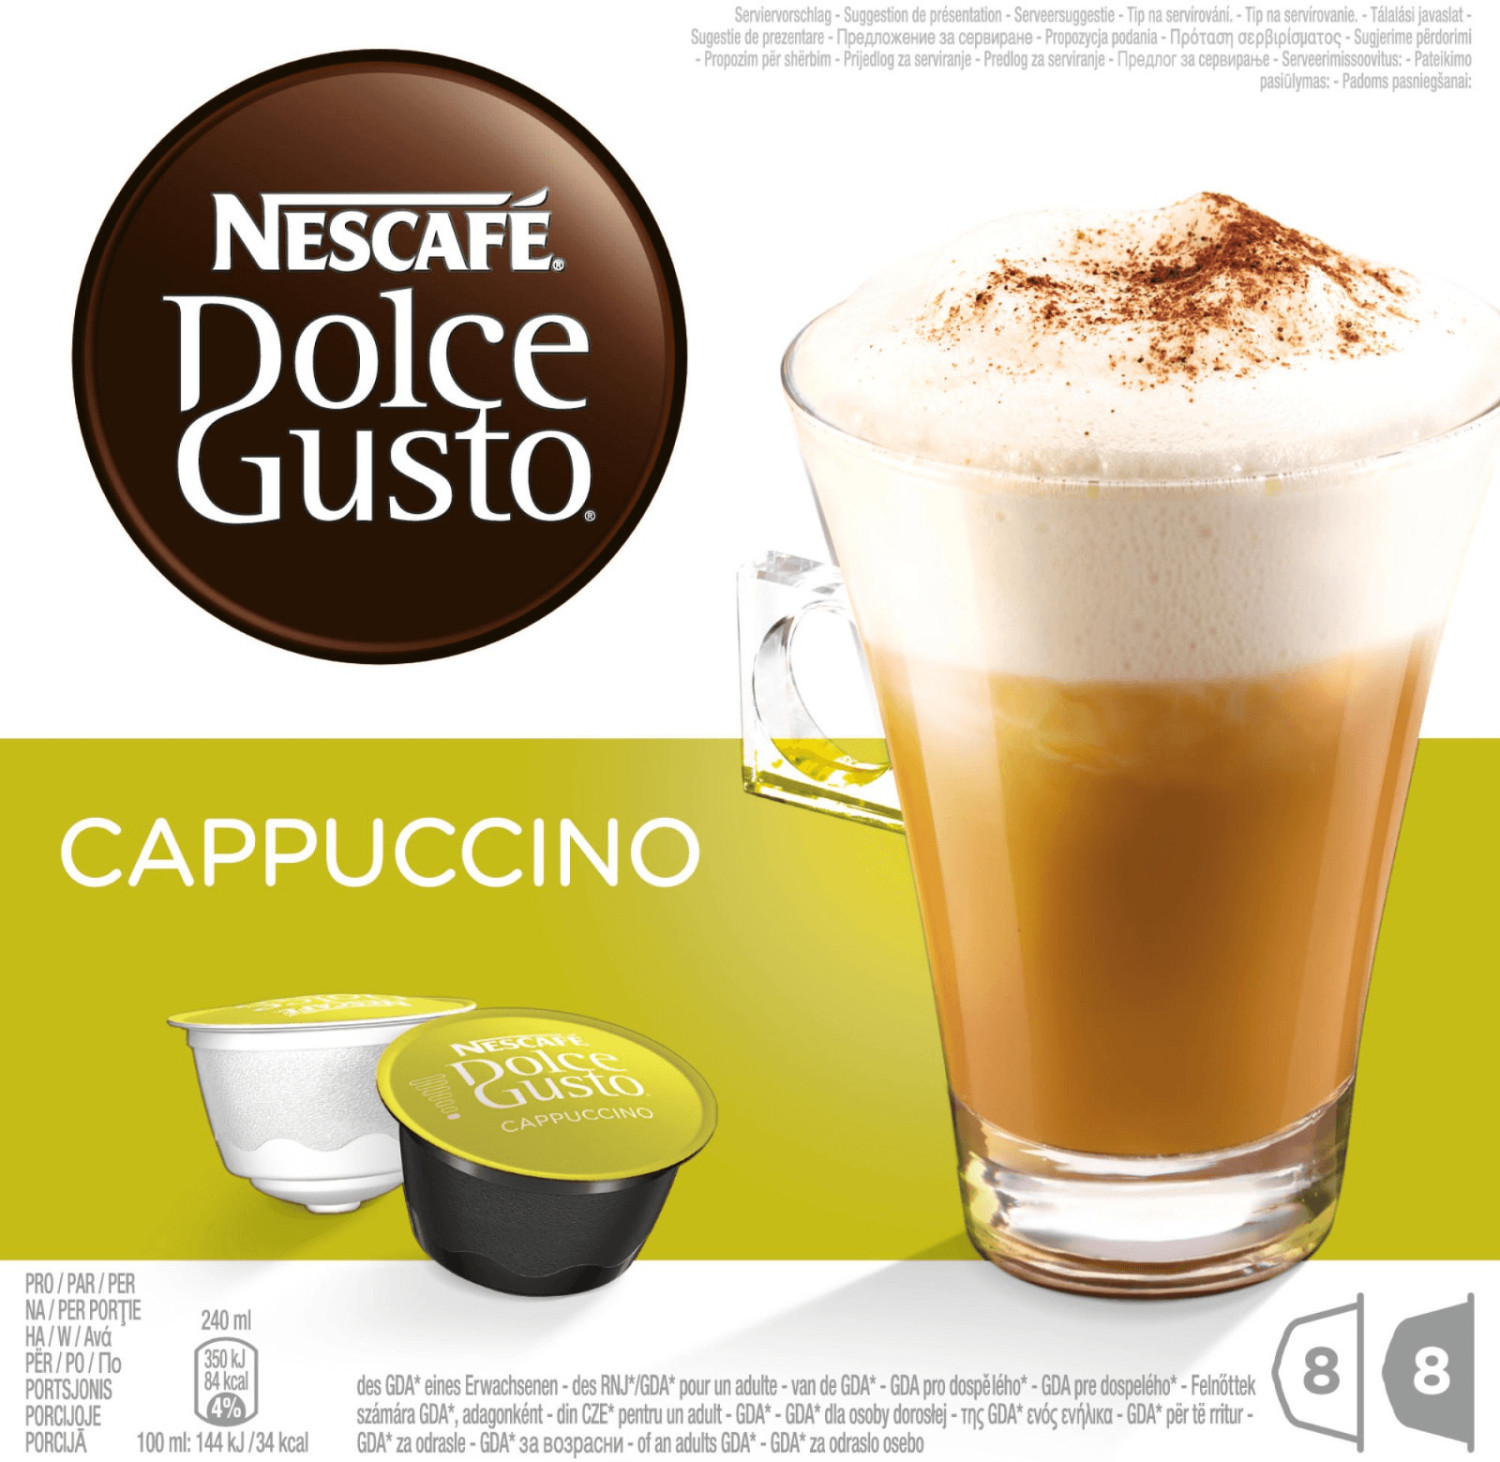 Dolce Gusto Nescafe Cápsulas de café, capuchino, 16 cápsulas (paquete de 3)